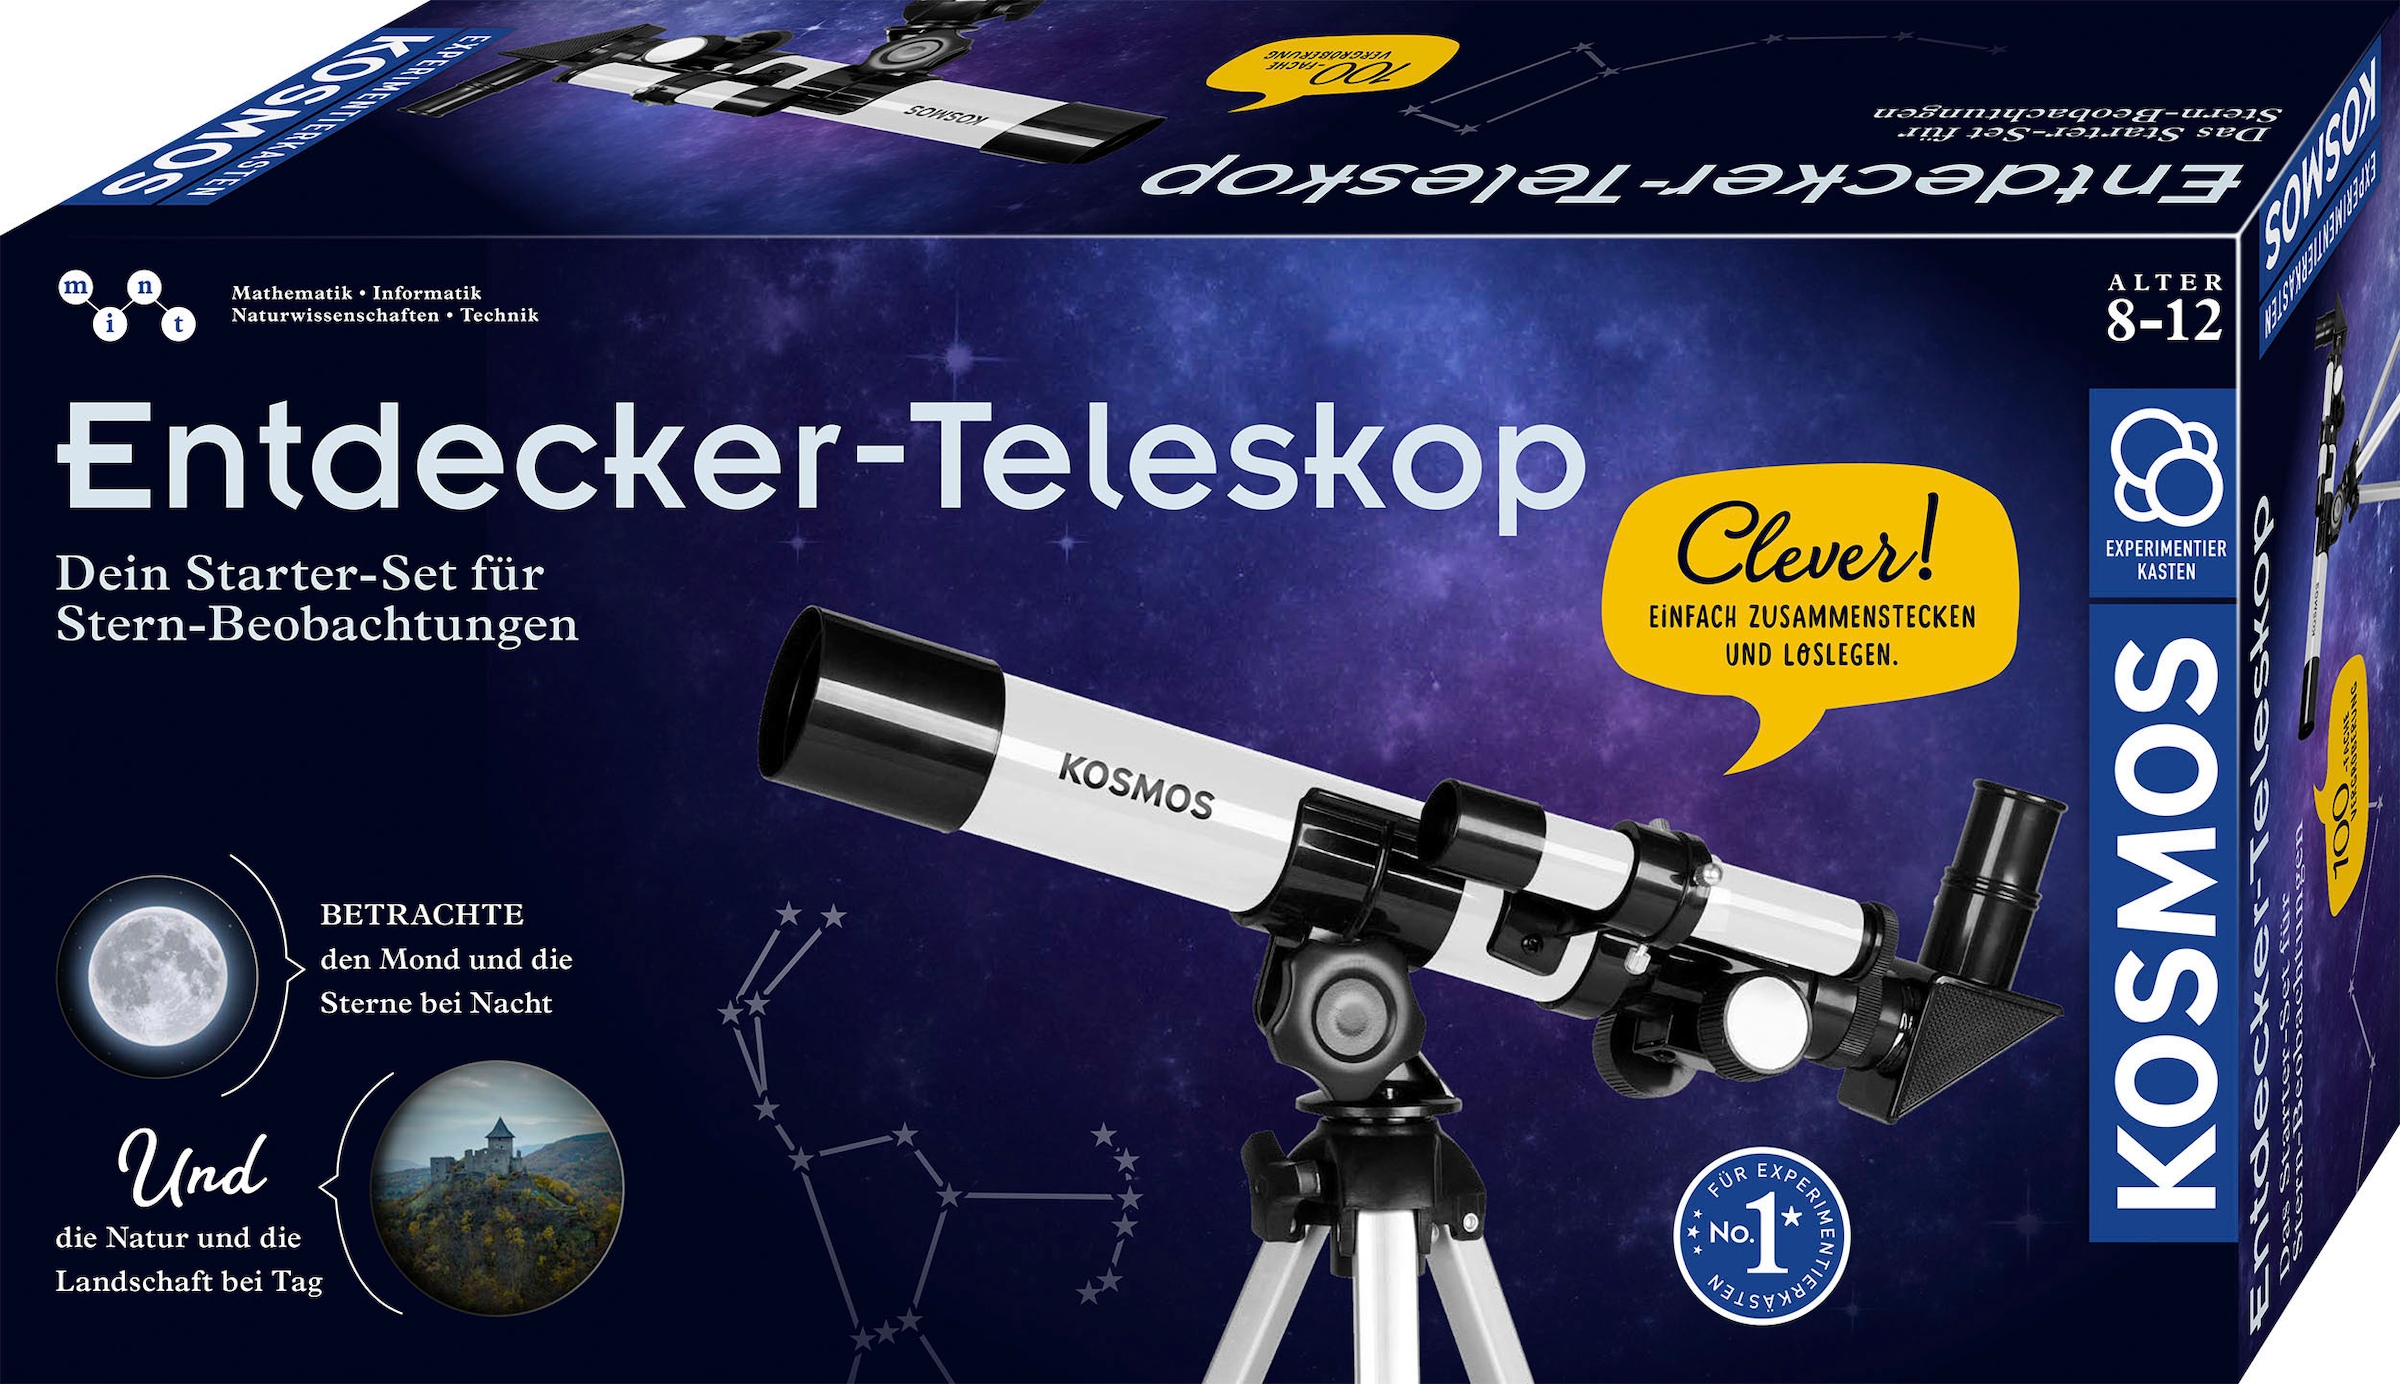 mit Teleskop Stativ Kosmos bestellen auf »Entdecker-Teleskop«, Rechnung